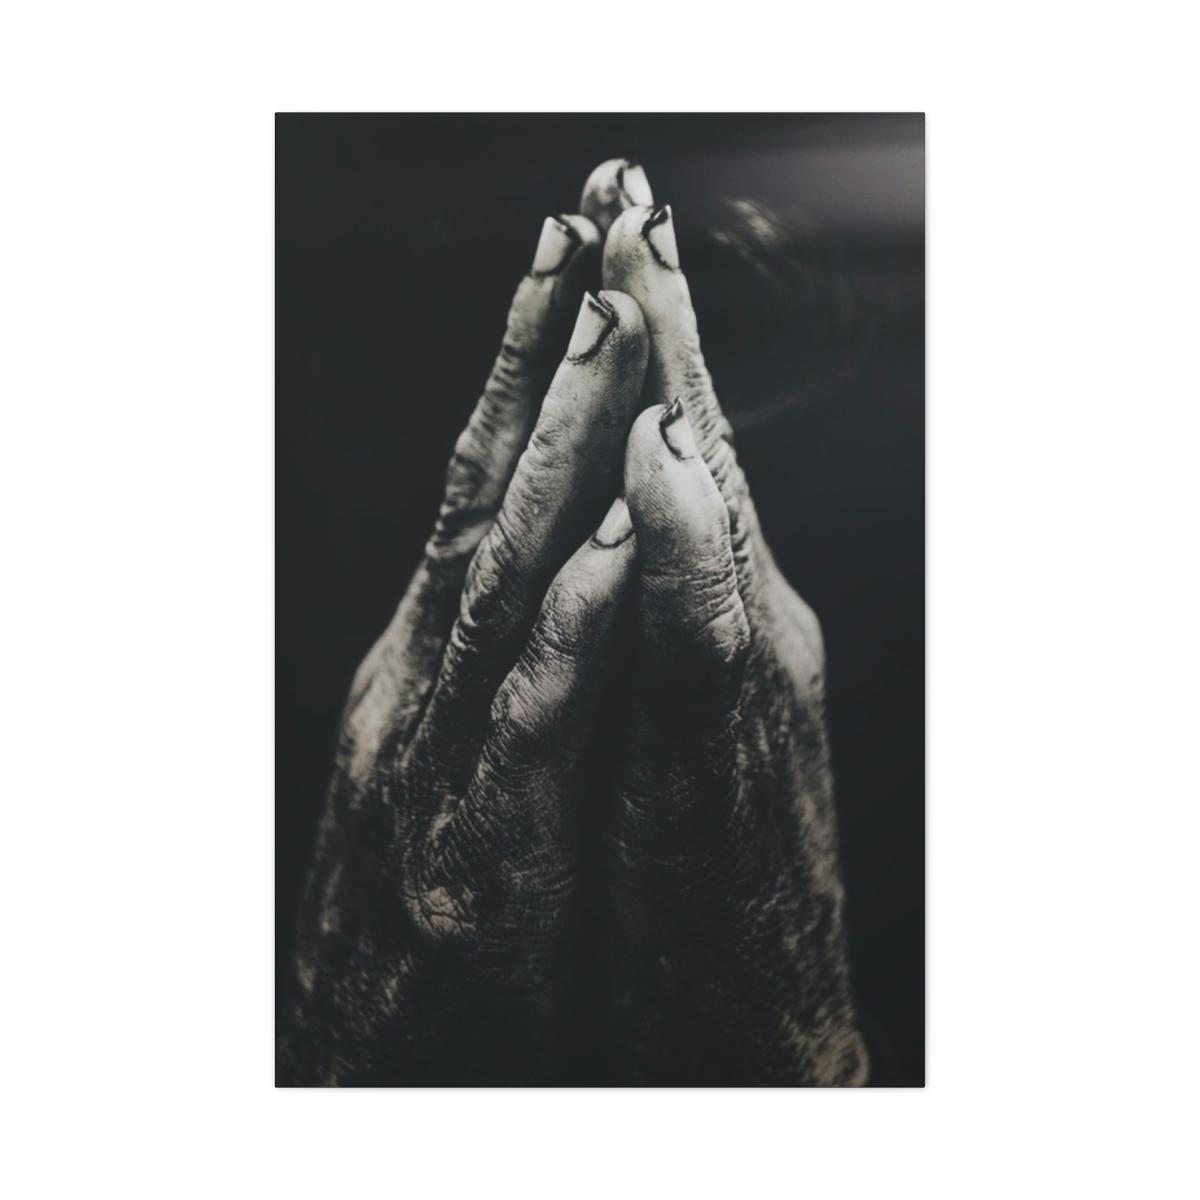 Praying hands image